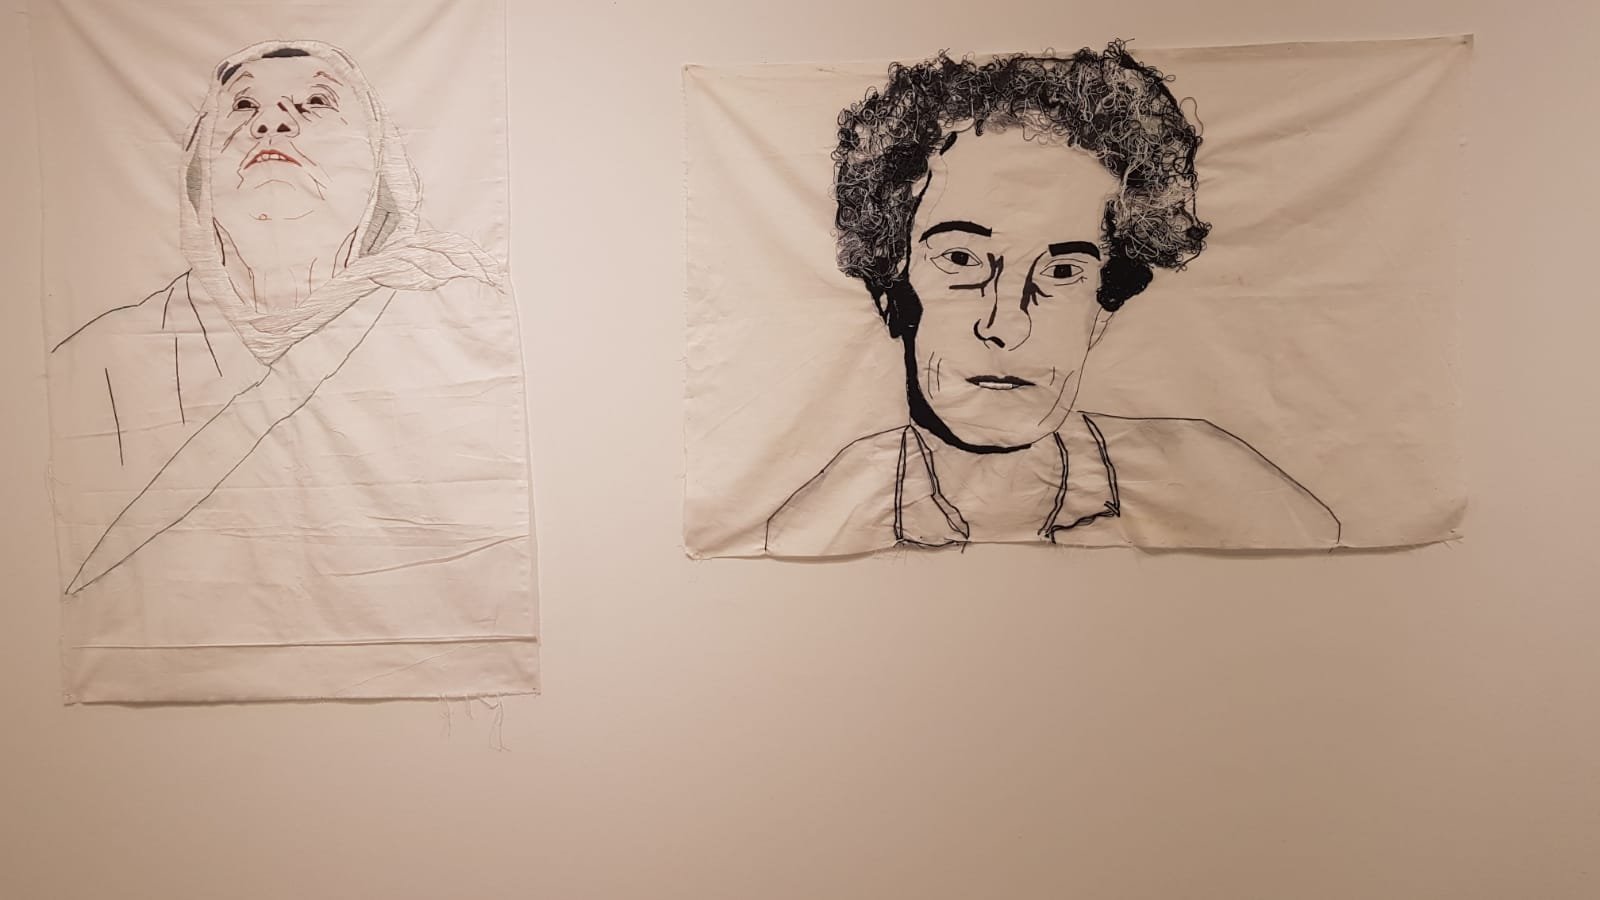 خريجات كليّة الفنون همدراشا في بيت بيرل يطرحنّ قضايا المرأة والوطن خلال معارضهنّ في جاليري أم الفحم-11